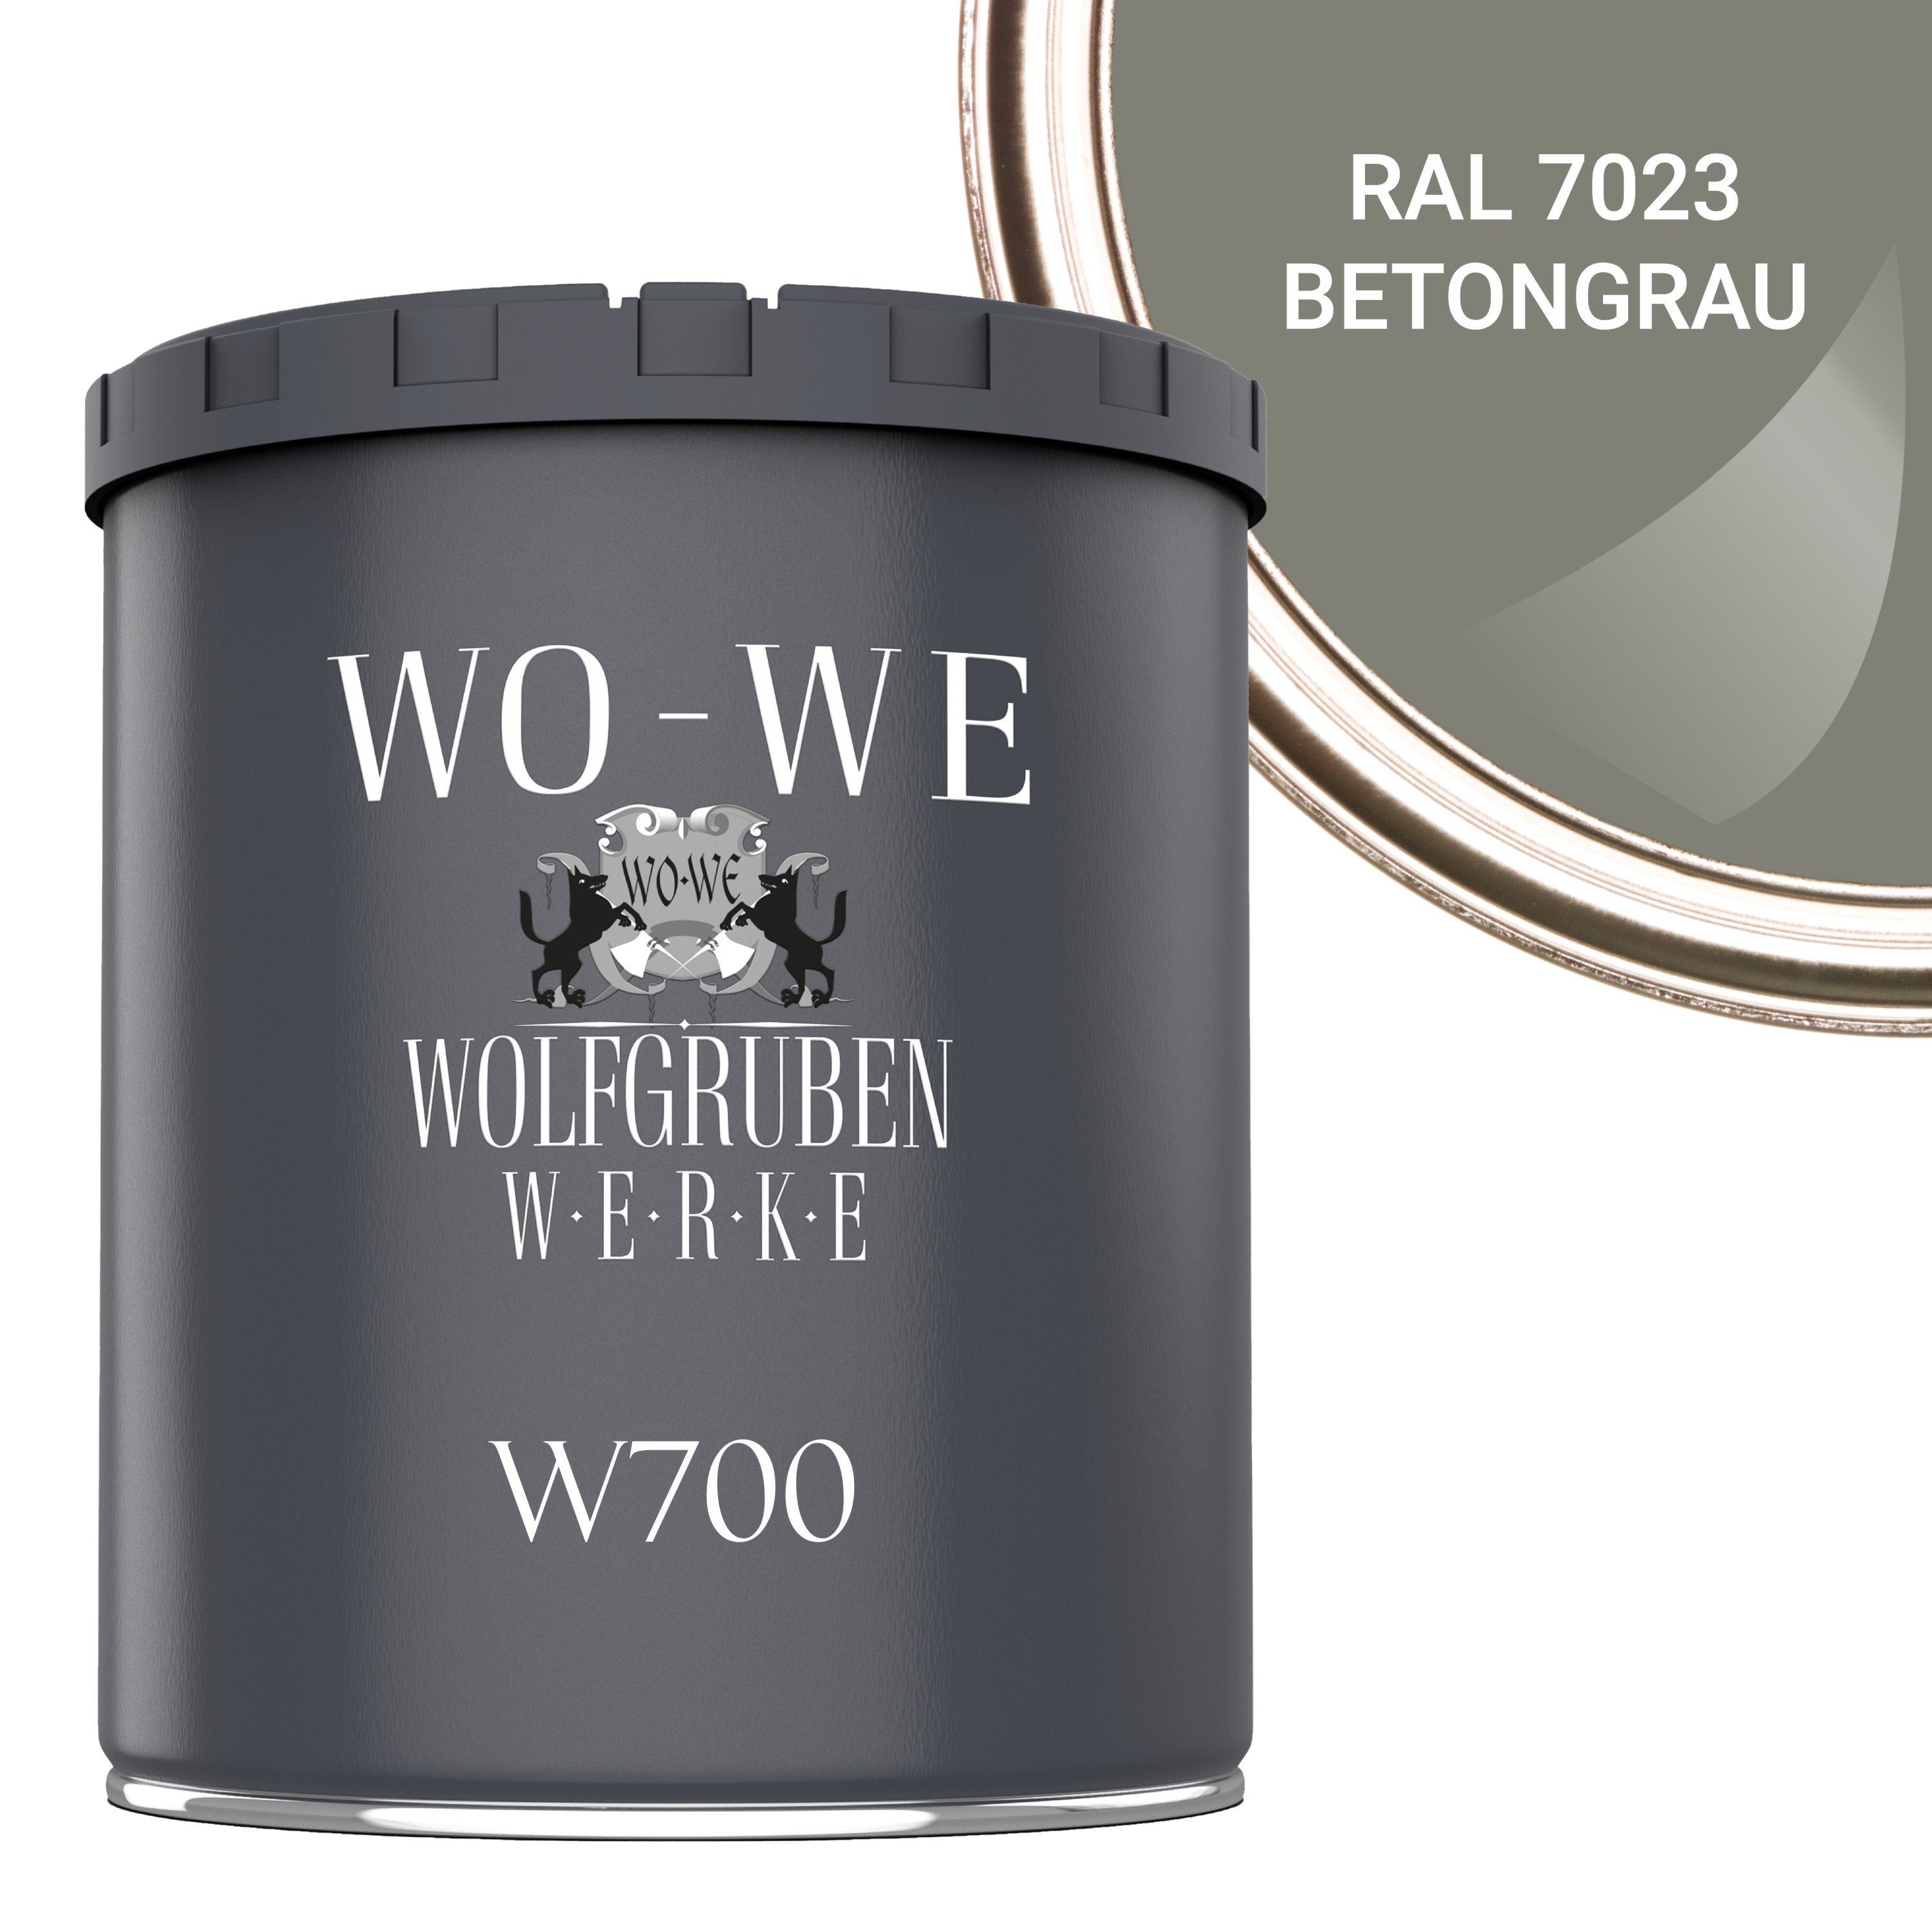 WO-WE Bodenversiegelung Betonfarbe Bodenfarbe Bodenbeschichtung W700, 1-10L, Seidenglänzend RAL 7023 Betongrau